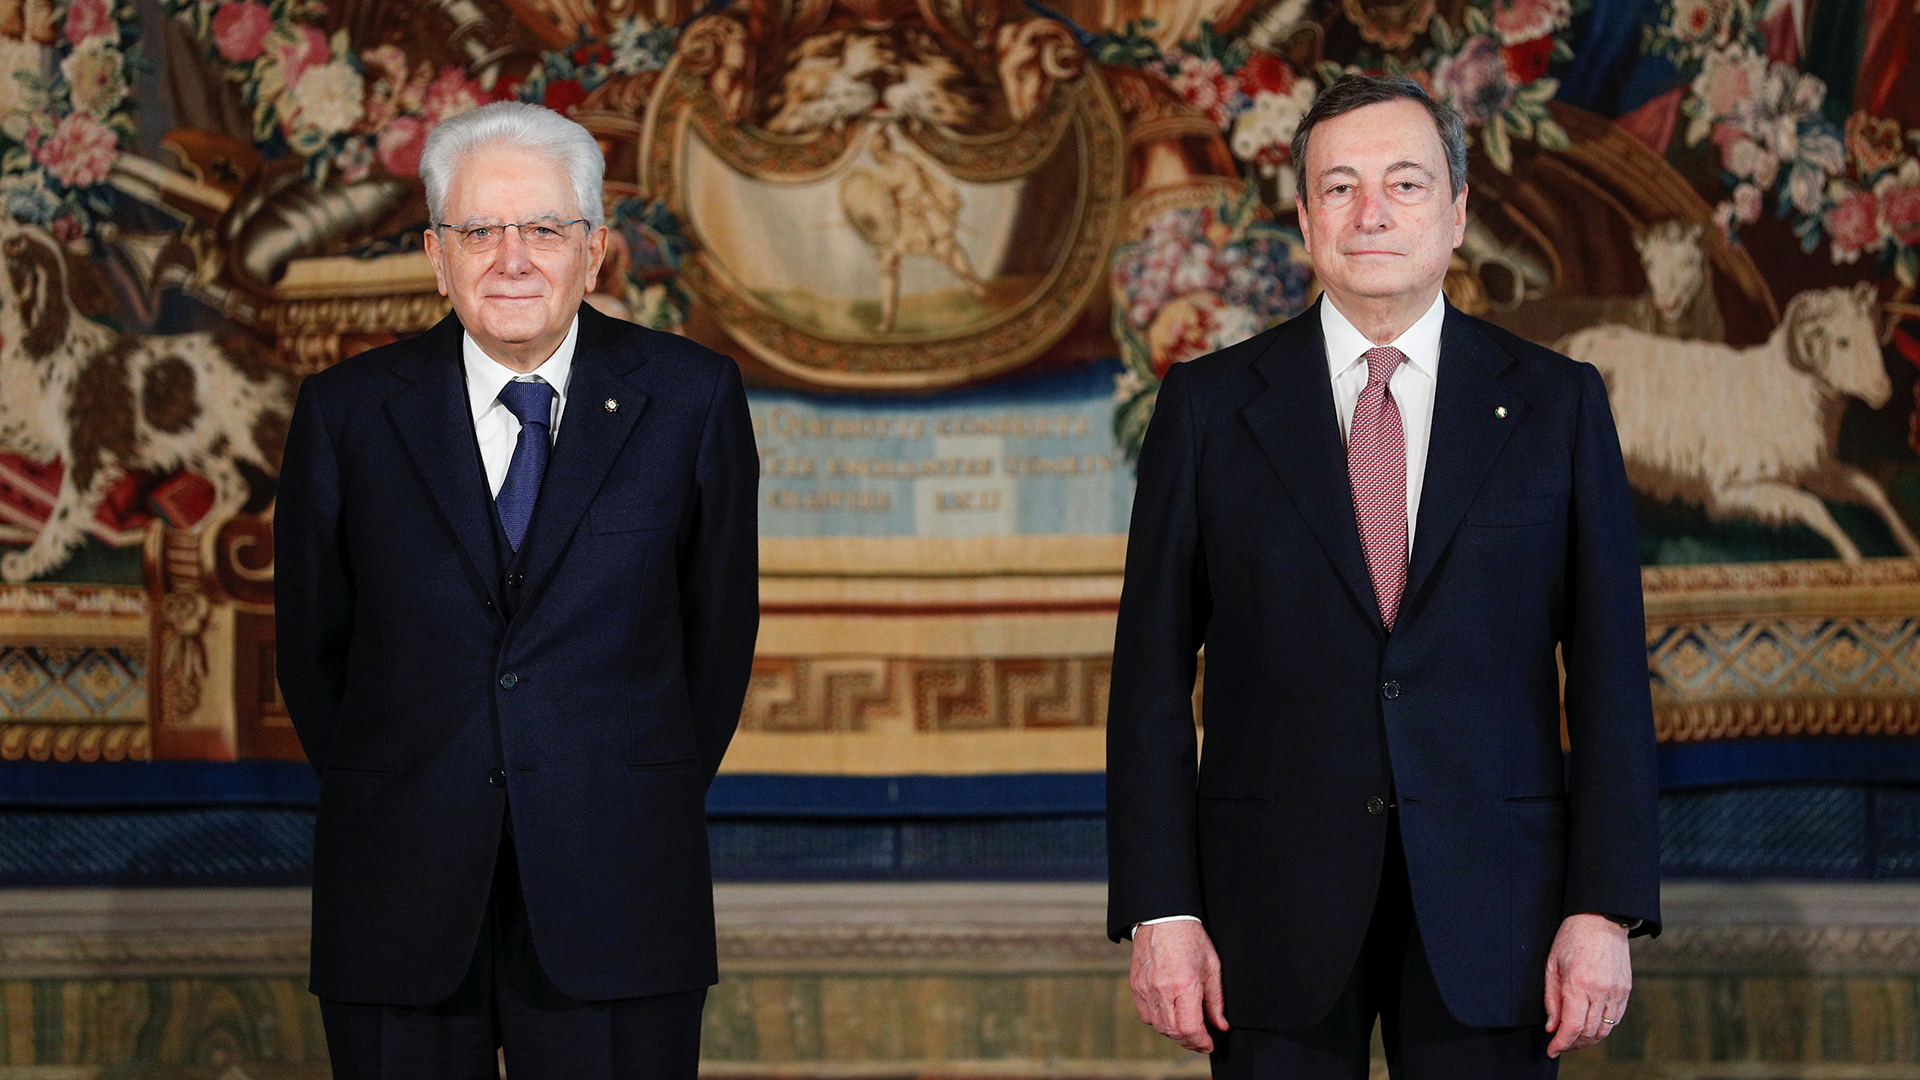 Sergio Mattarella und Mario Draghi nach der Vereidigung